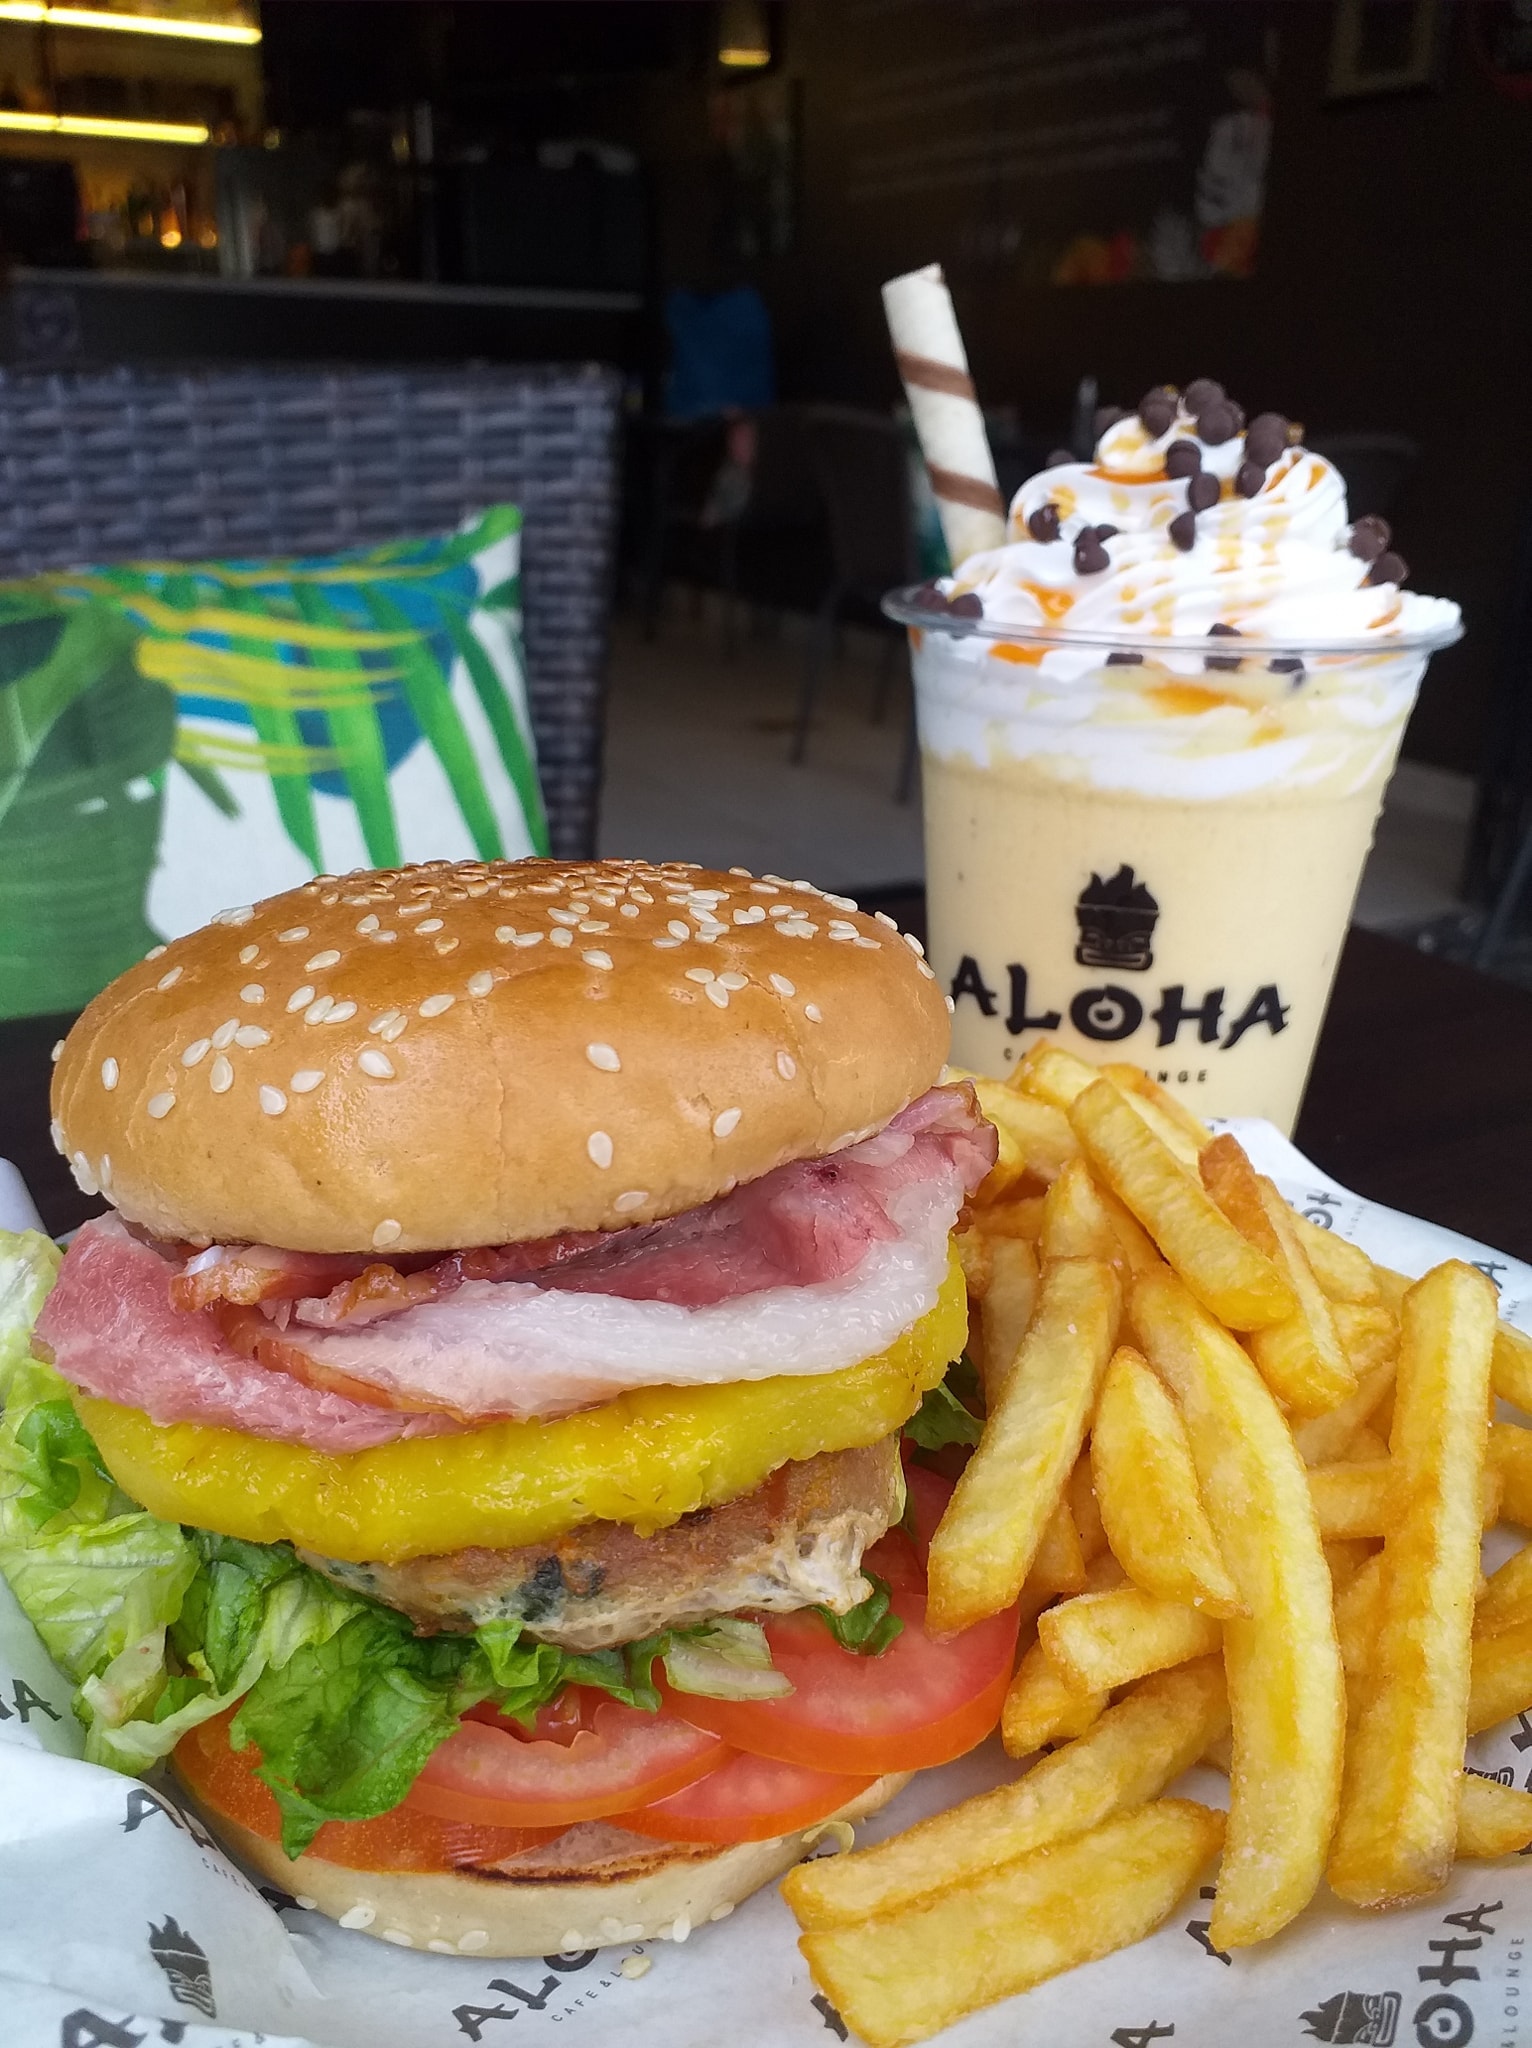 ALOHA – Café & Lounge